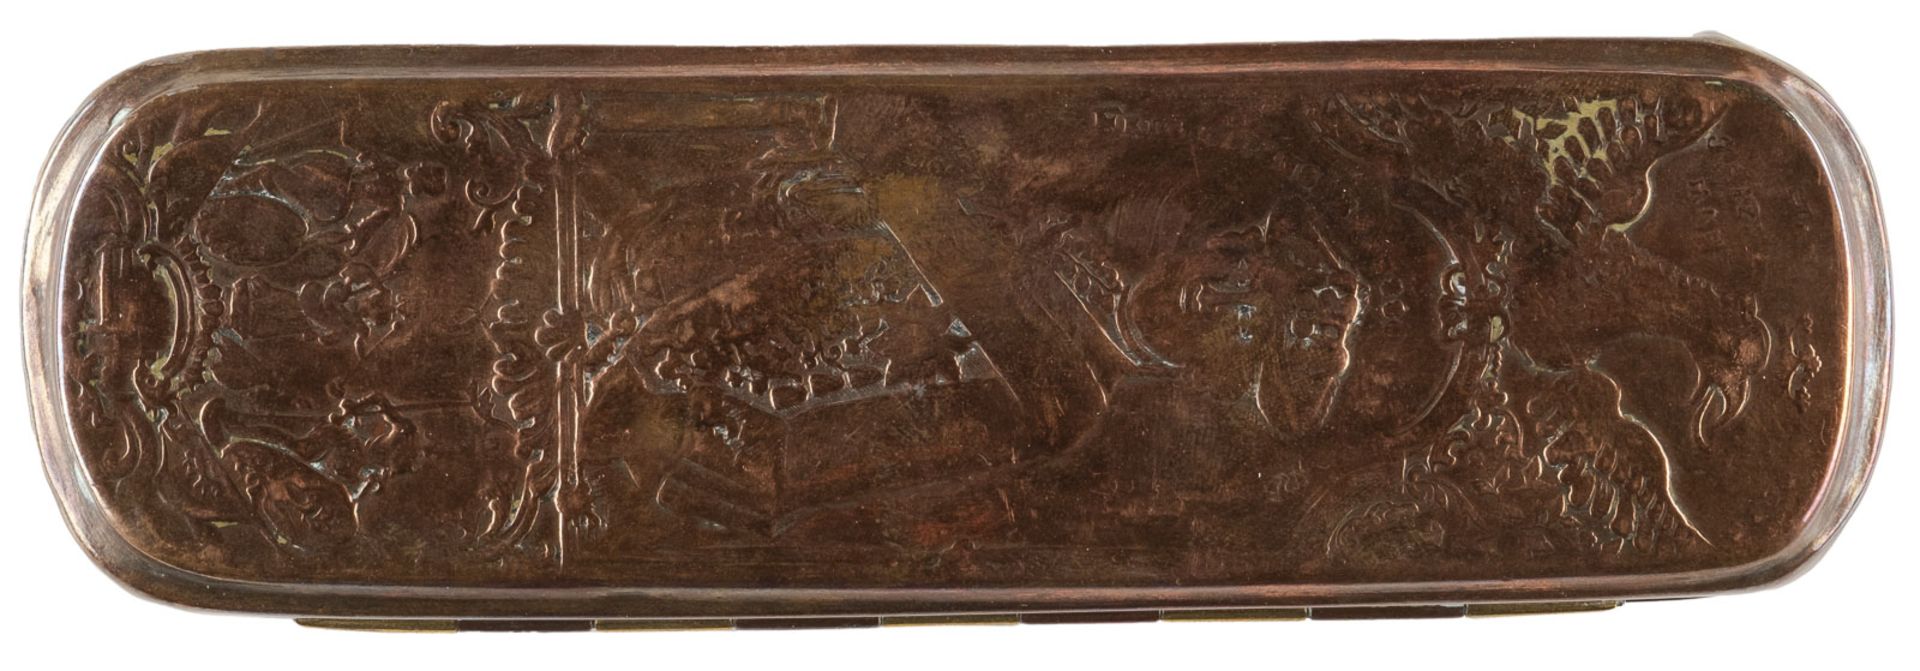 ISERLOHNER TABAKSDOSE MIT 'FERDINAND VON BRAUNSCHWEIG' UND 'SCHLACHT BEI KREFELD 1758' - Bild 2 aus 3